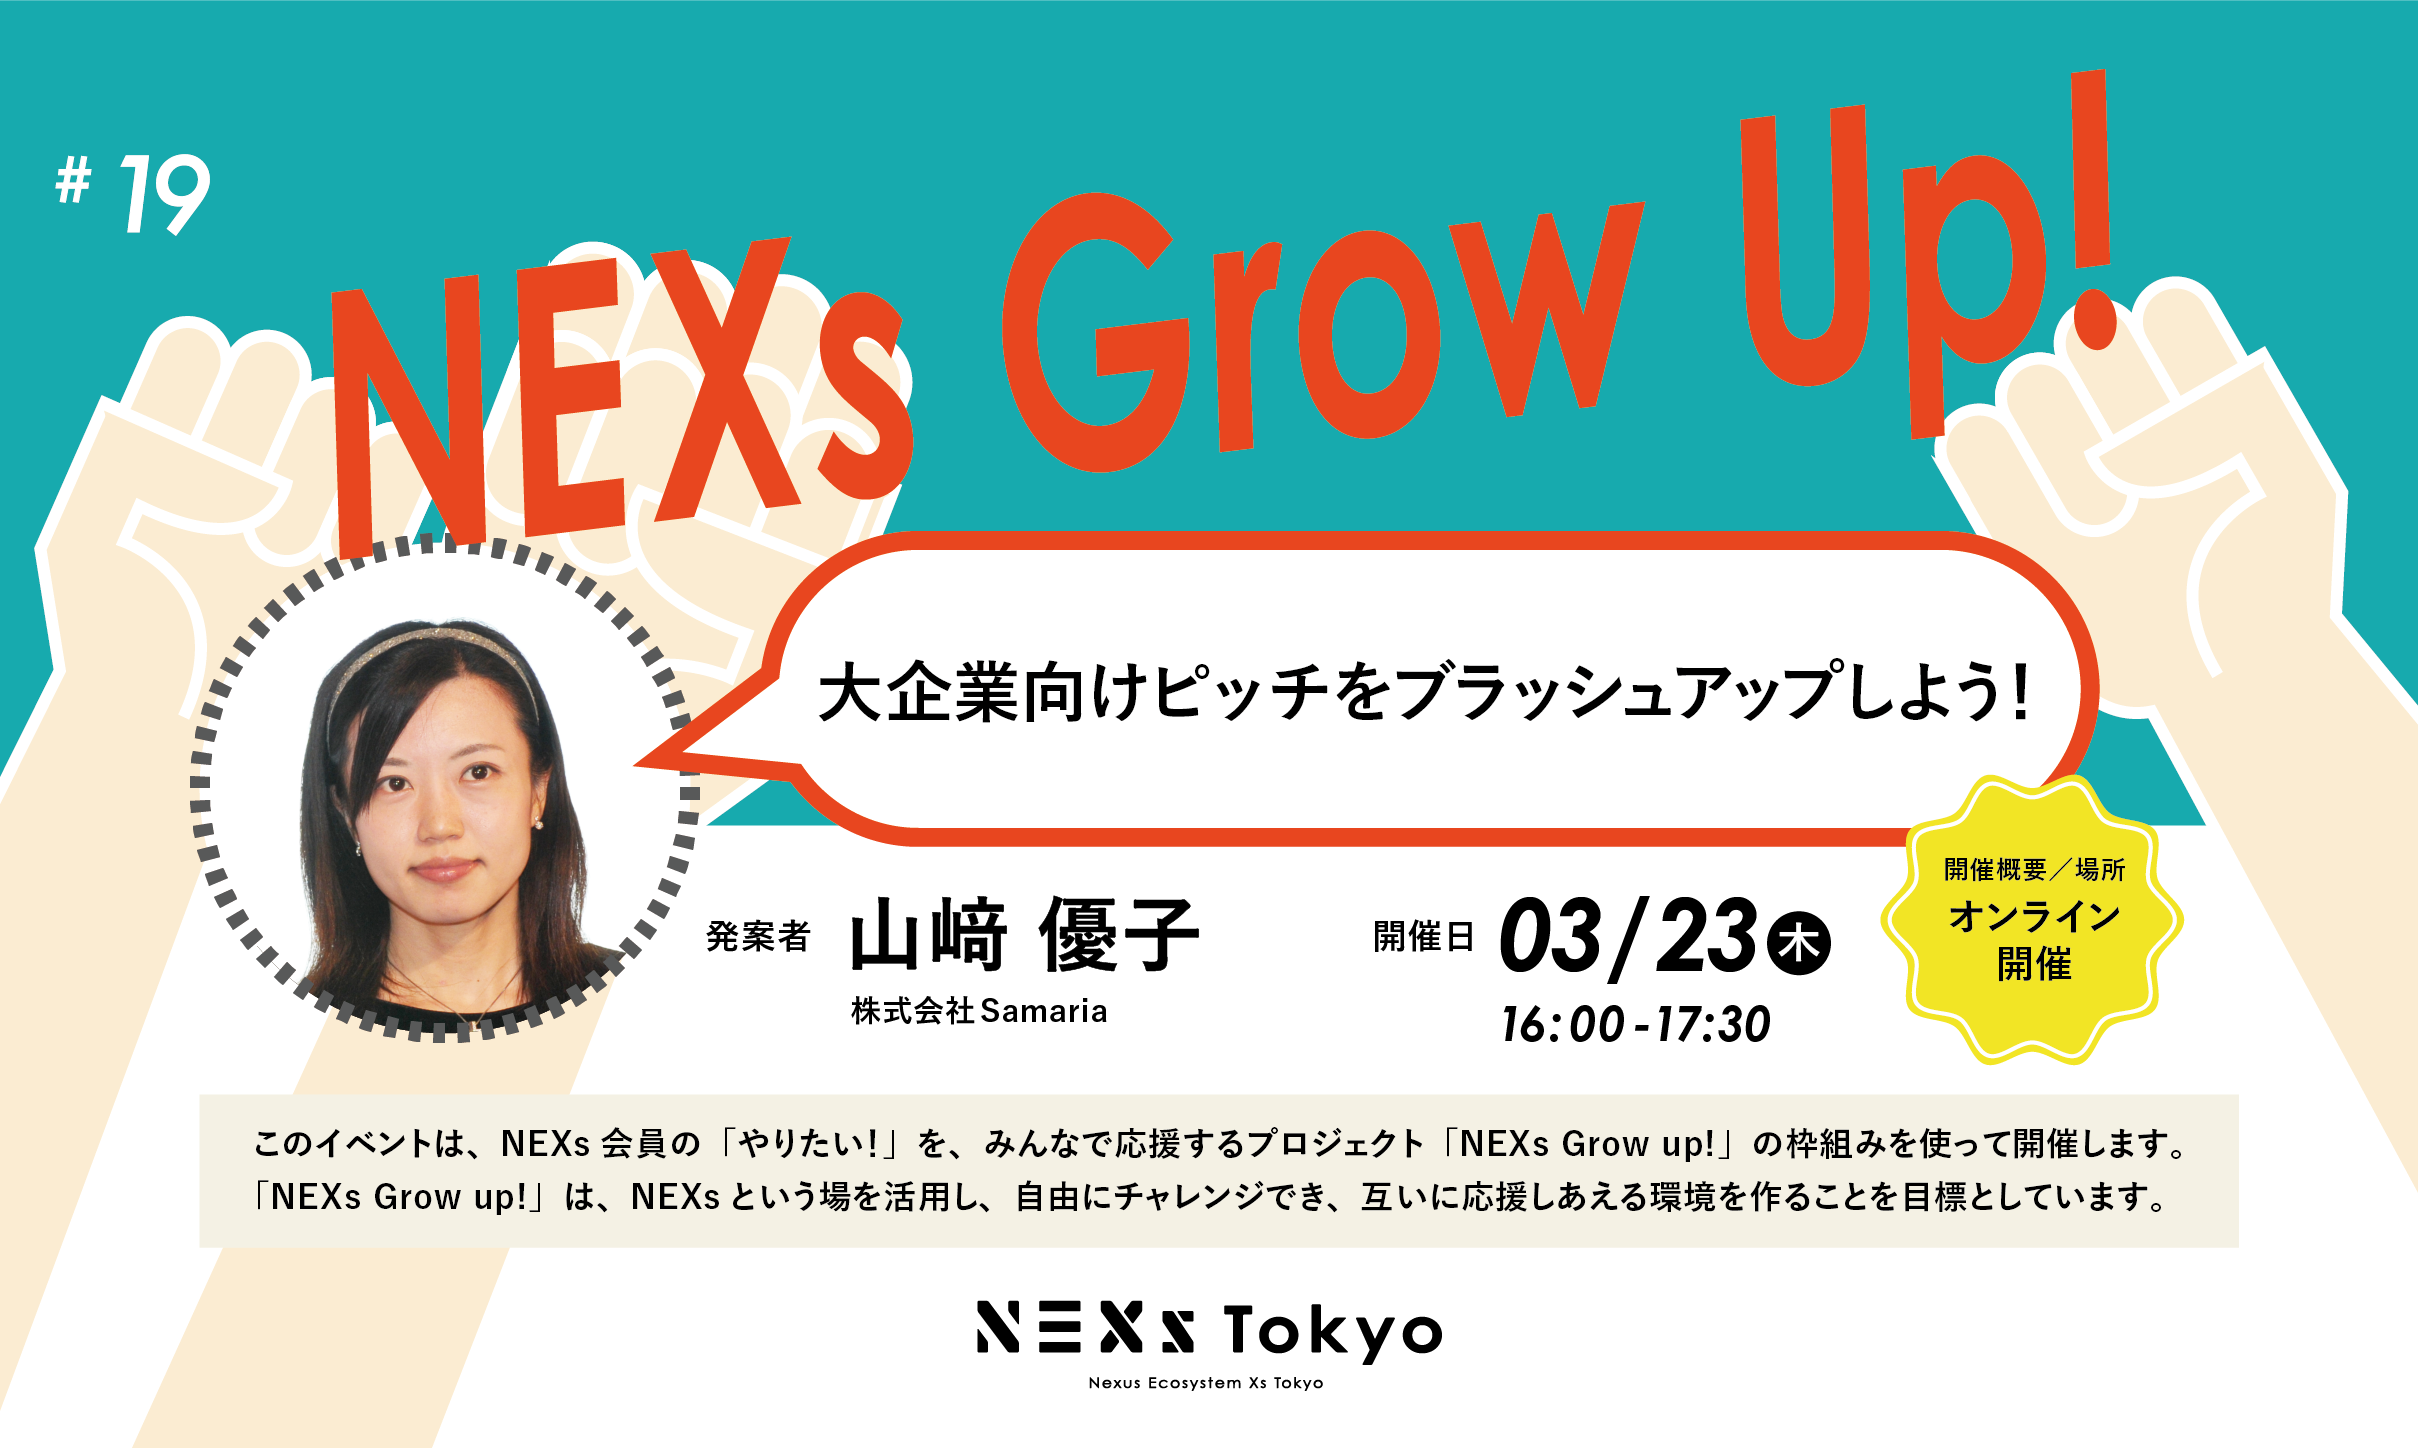 NEXs Grow Up!vol.19  大企業向けピッチをブラッシュアップしよう！